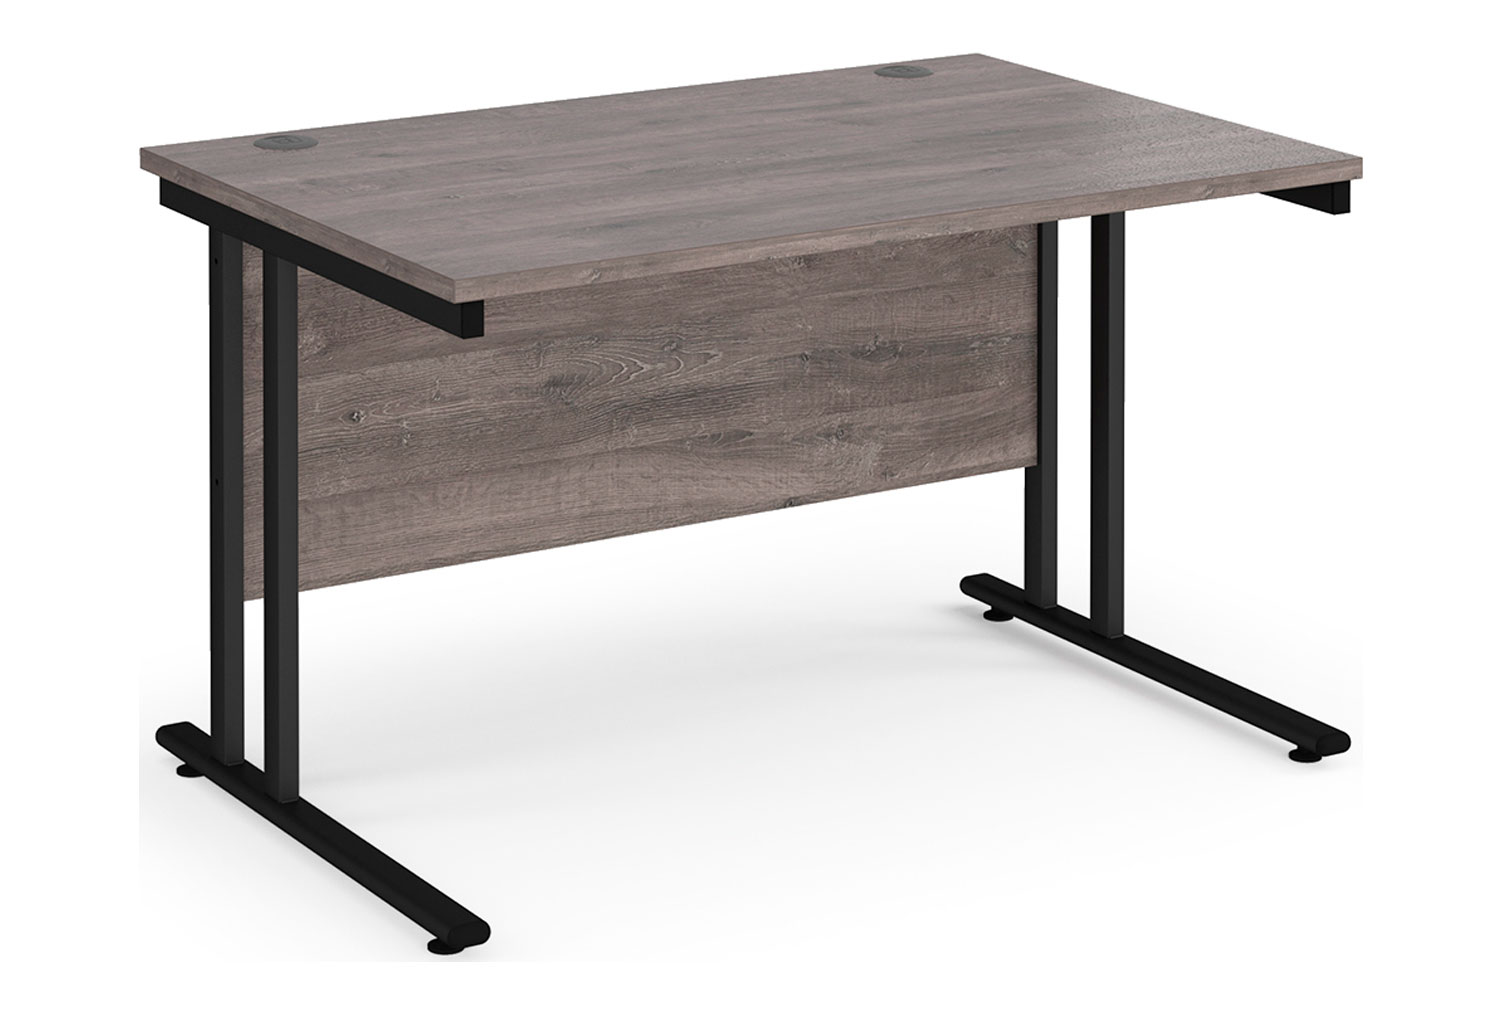 Value Line Deluxe C-Leg Rectangular Office Desk (Black Legs), 120wx80dx73h (cm), Grey Oak, Fully Installed